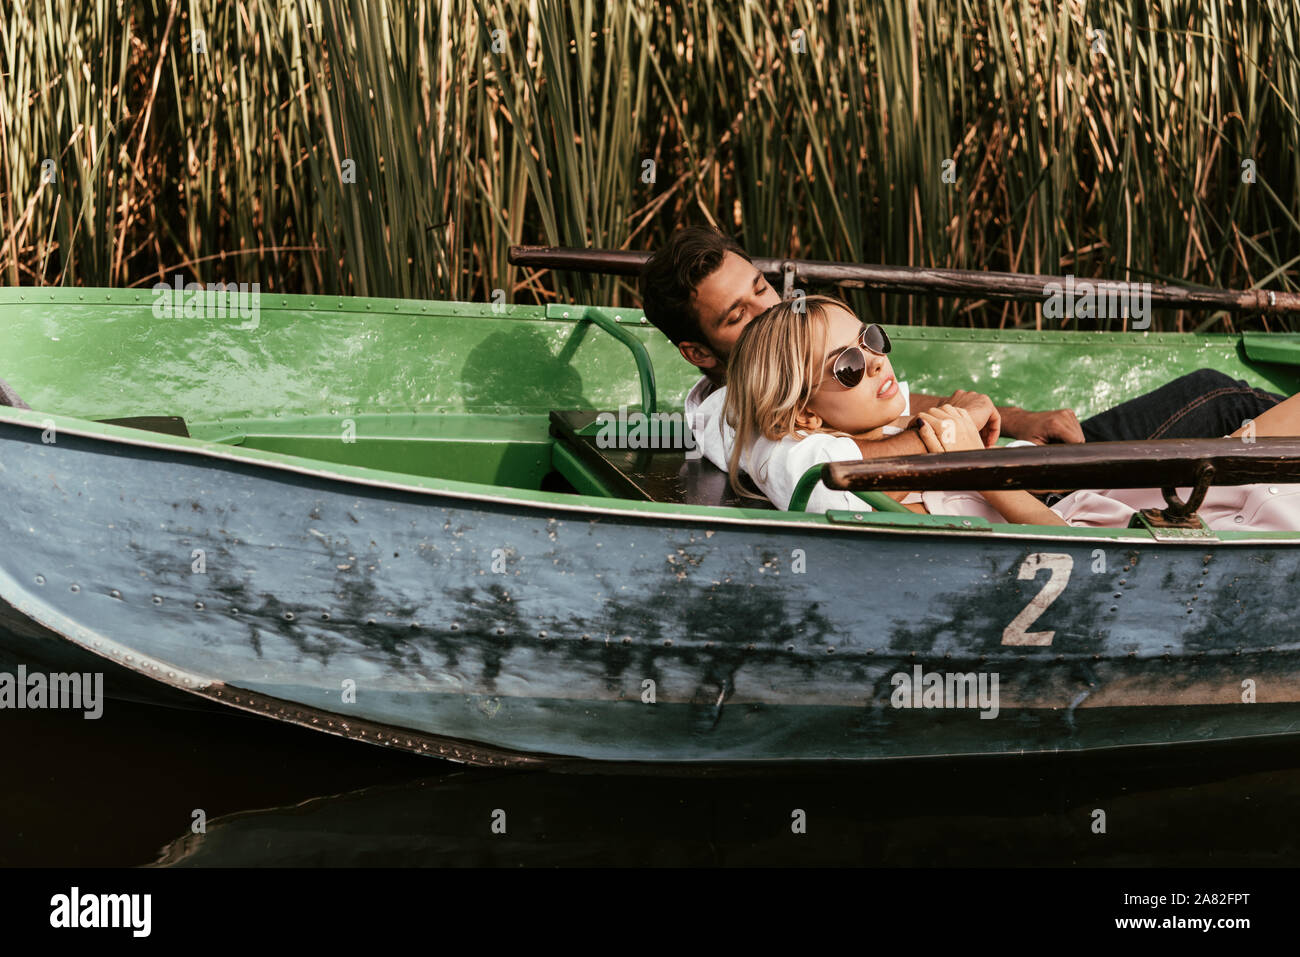 Coppia giovane rilassante gita in barca sul fiume vicino a canneto di sedge Foto Stock